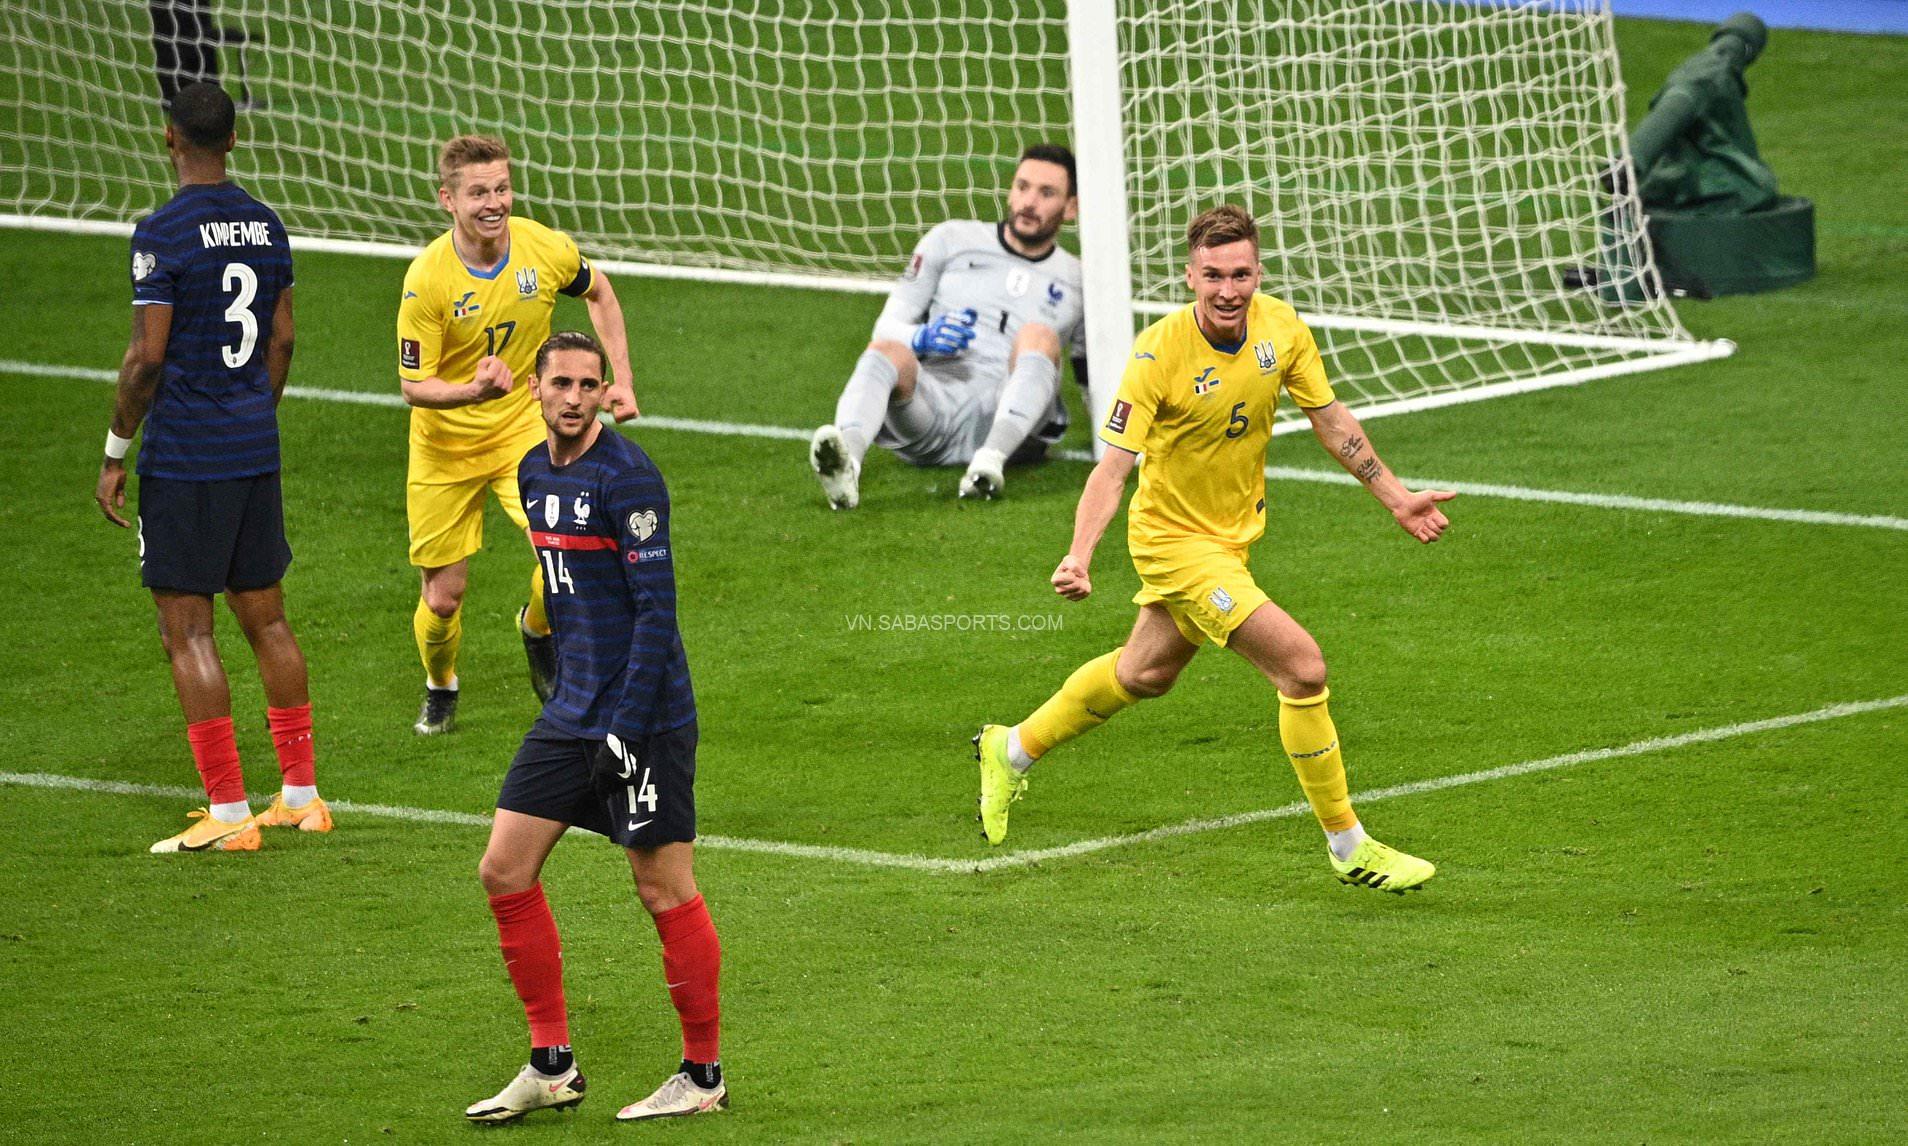 Pháp hòa 1-1 dù đối thủ chẳng thể sút trúng đích